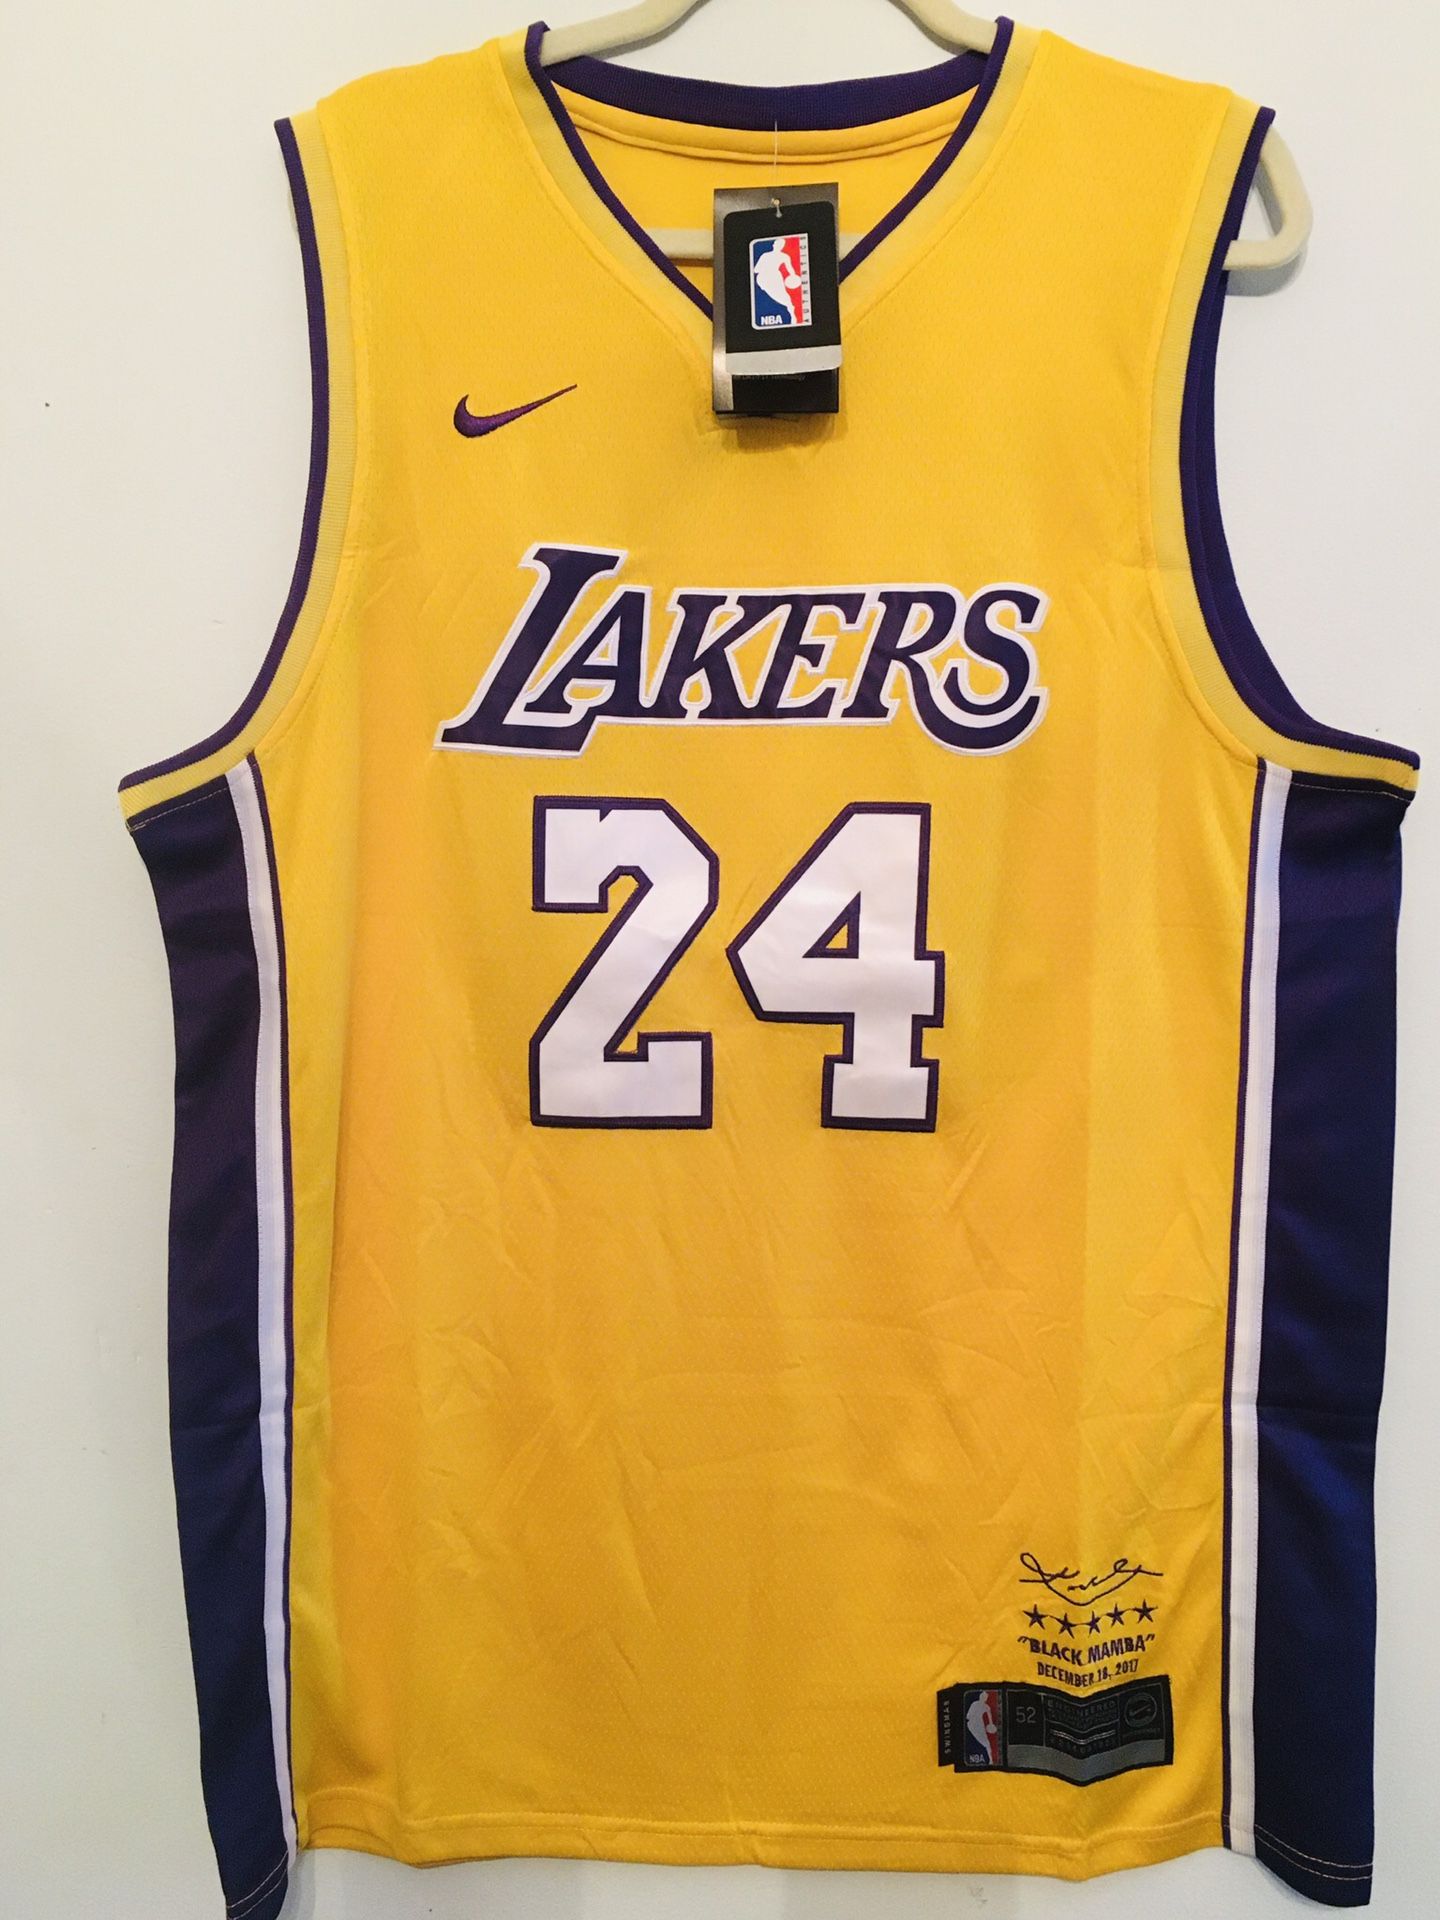 Brand new Lakers Kobe Mamba commemorative jersey